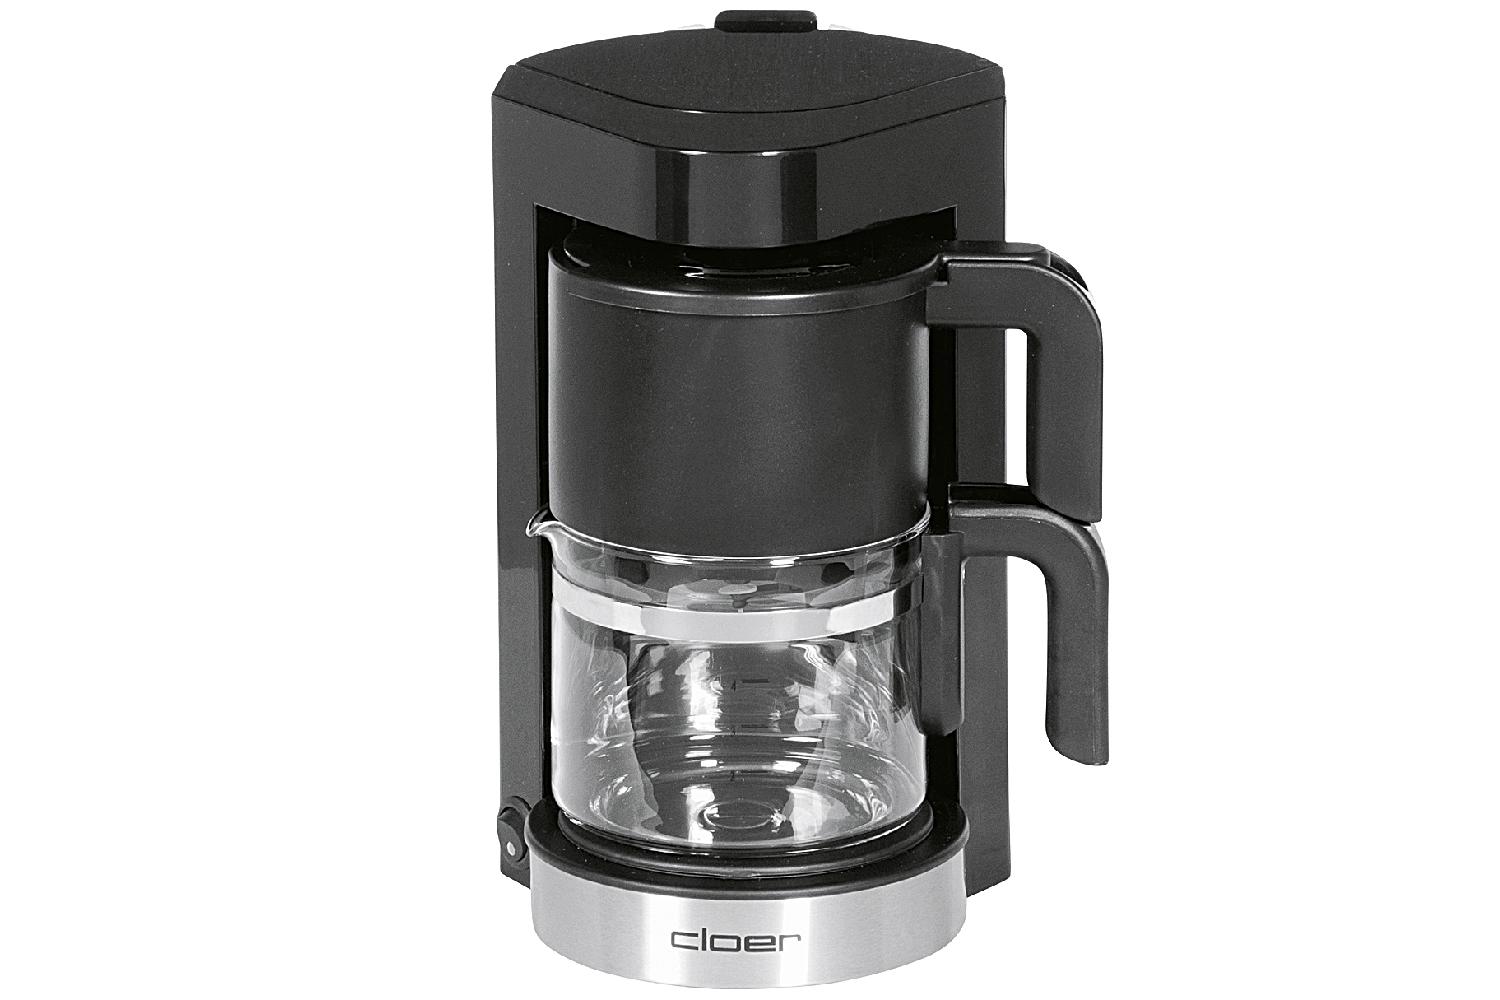 Cloer Kaffeefiltermaschine 5990 Fassungsvermögen: 5 Tassen, Tropfstopp-Funktion Glaskanne, abnehmbarer Wassertank, Warmhalteplatte